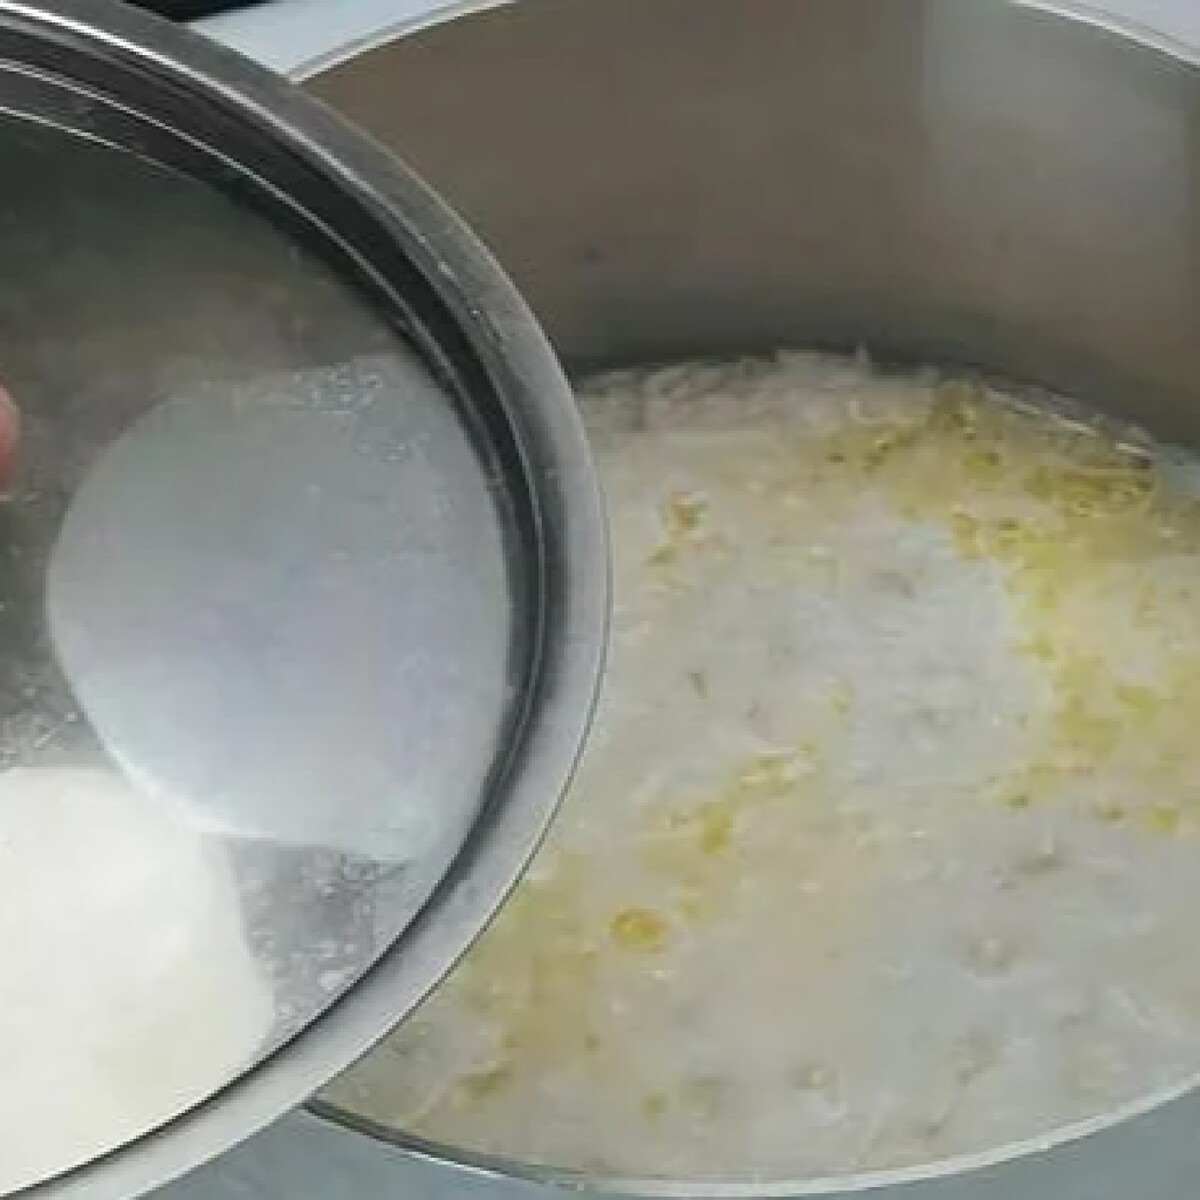 Как правильно отварить рис для гарнира в кастрюле рецепт с фото пошагово в домашних условиях